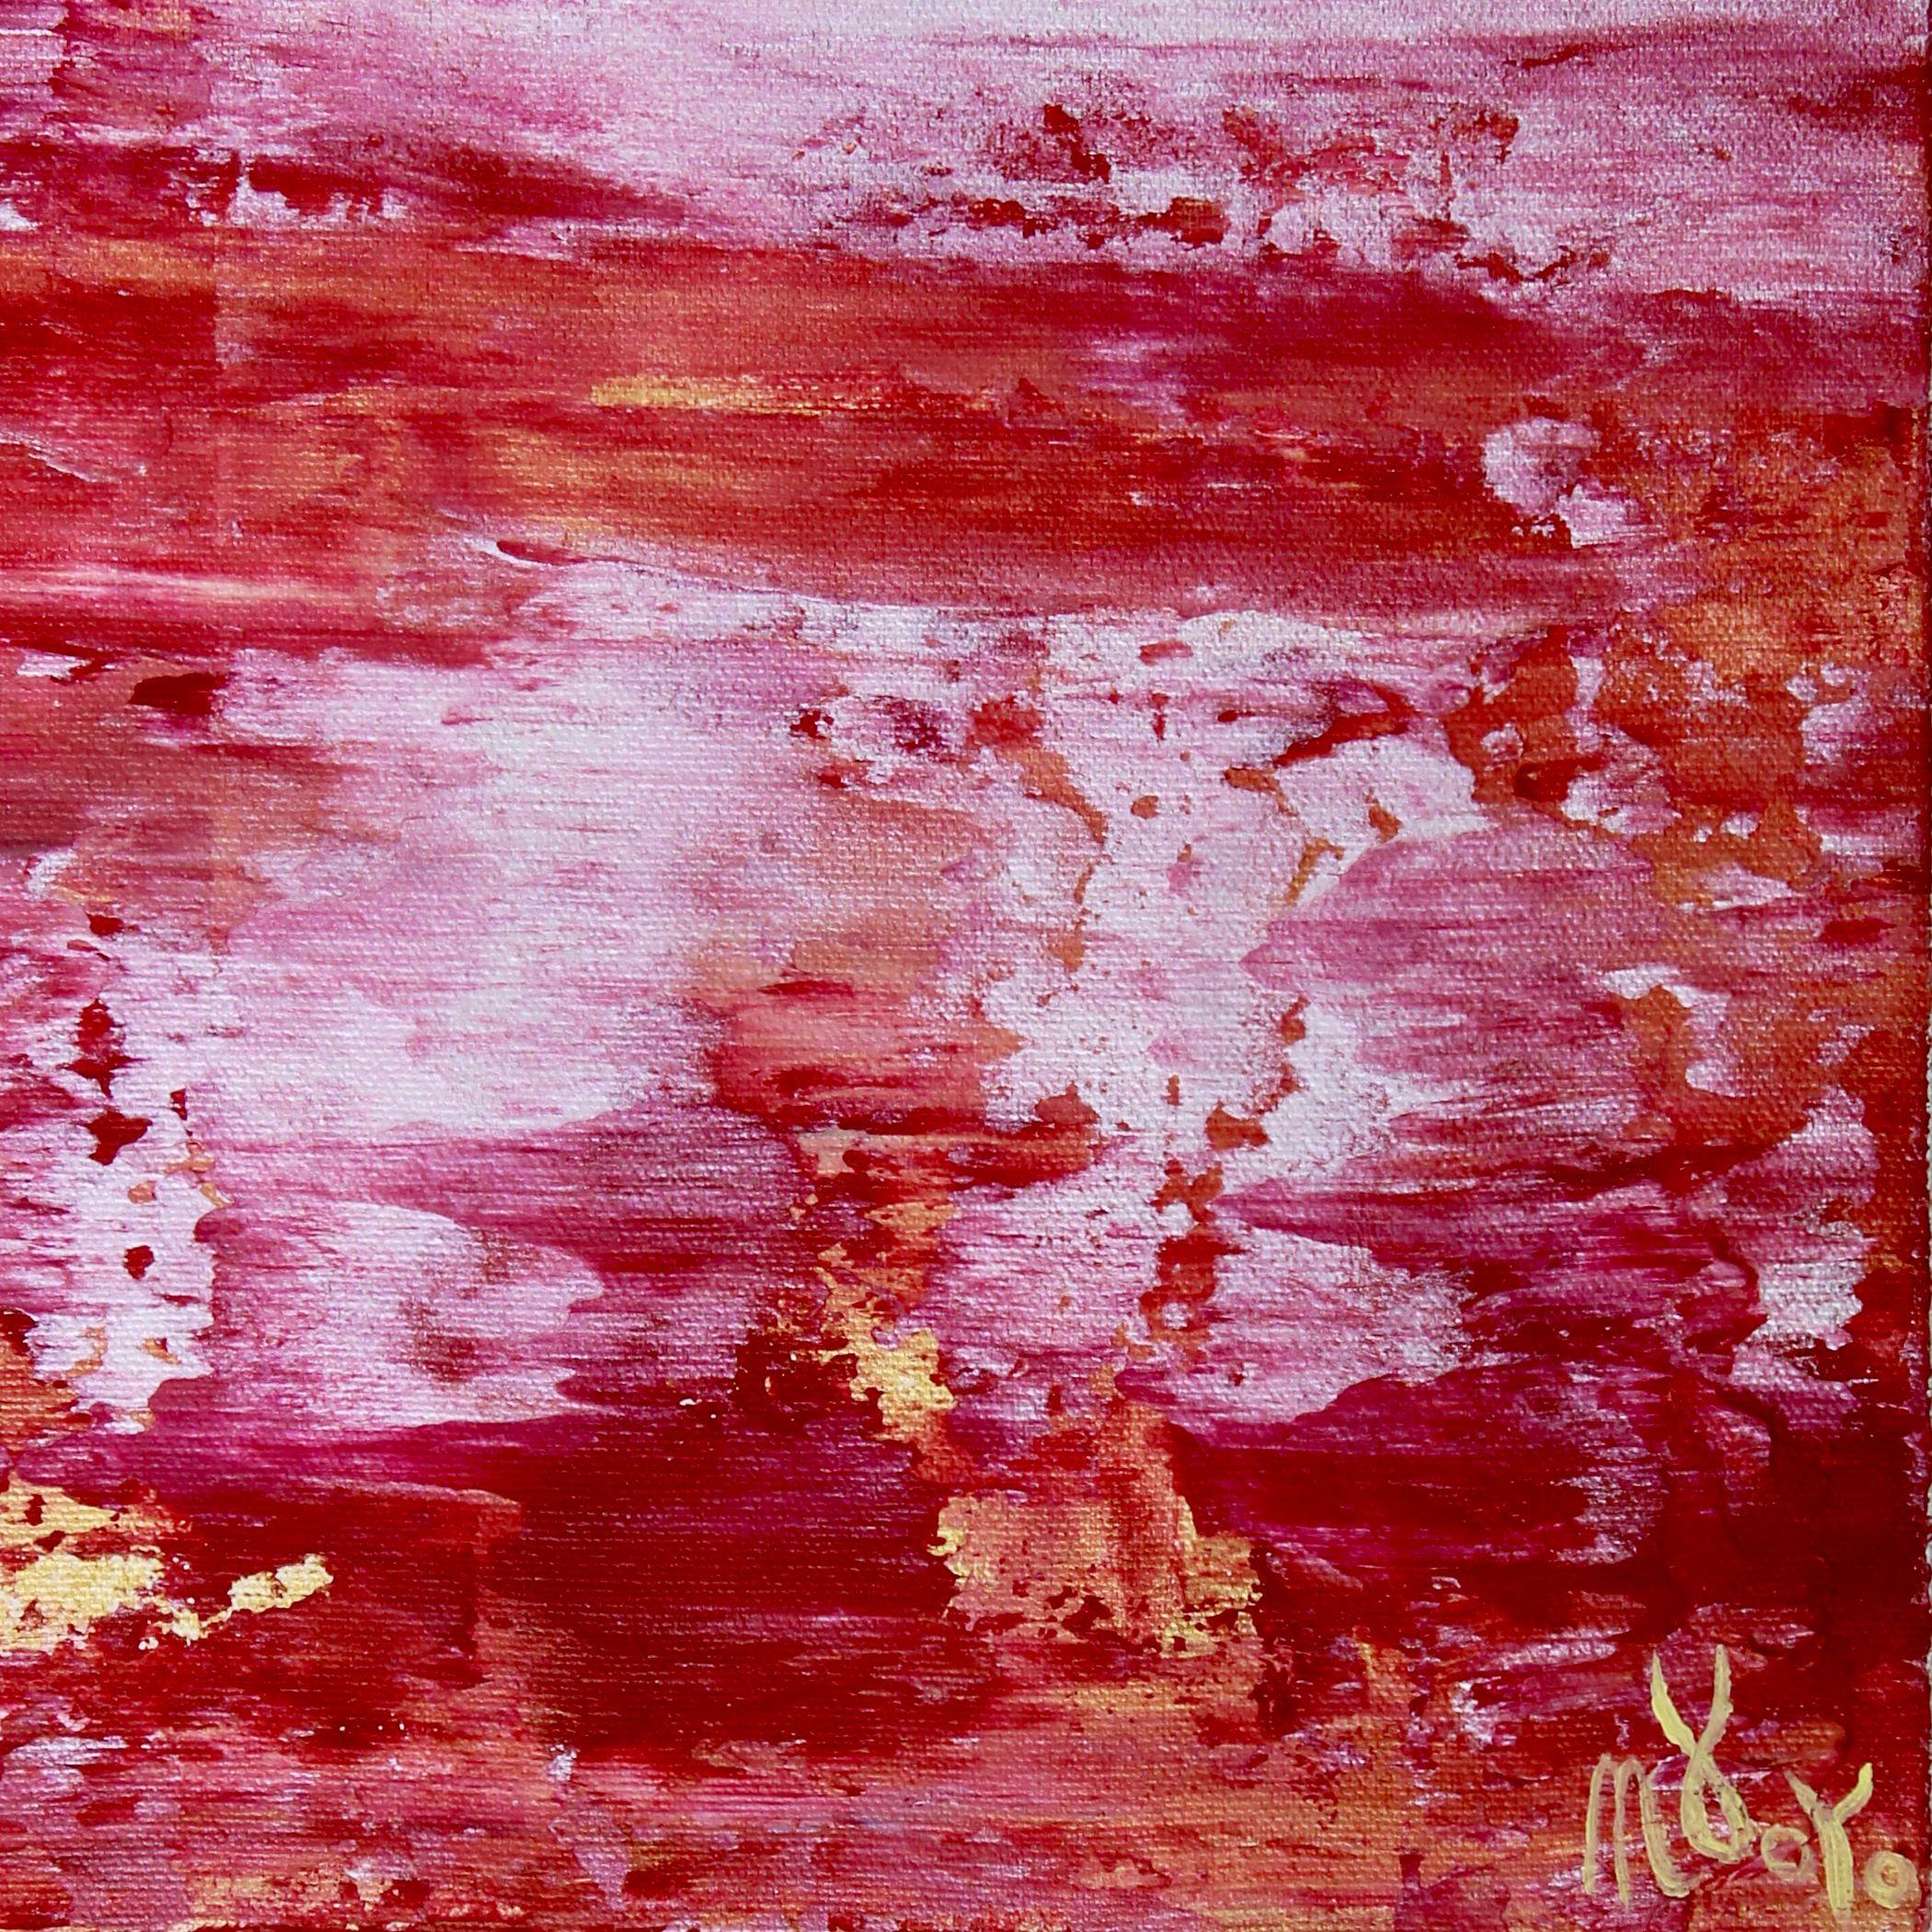 Un coucher de soleil en corail (réflections de argent), peinture, acrylique sur toile - Rose Abstract Painting par Nestor Toro